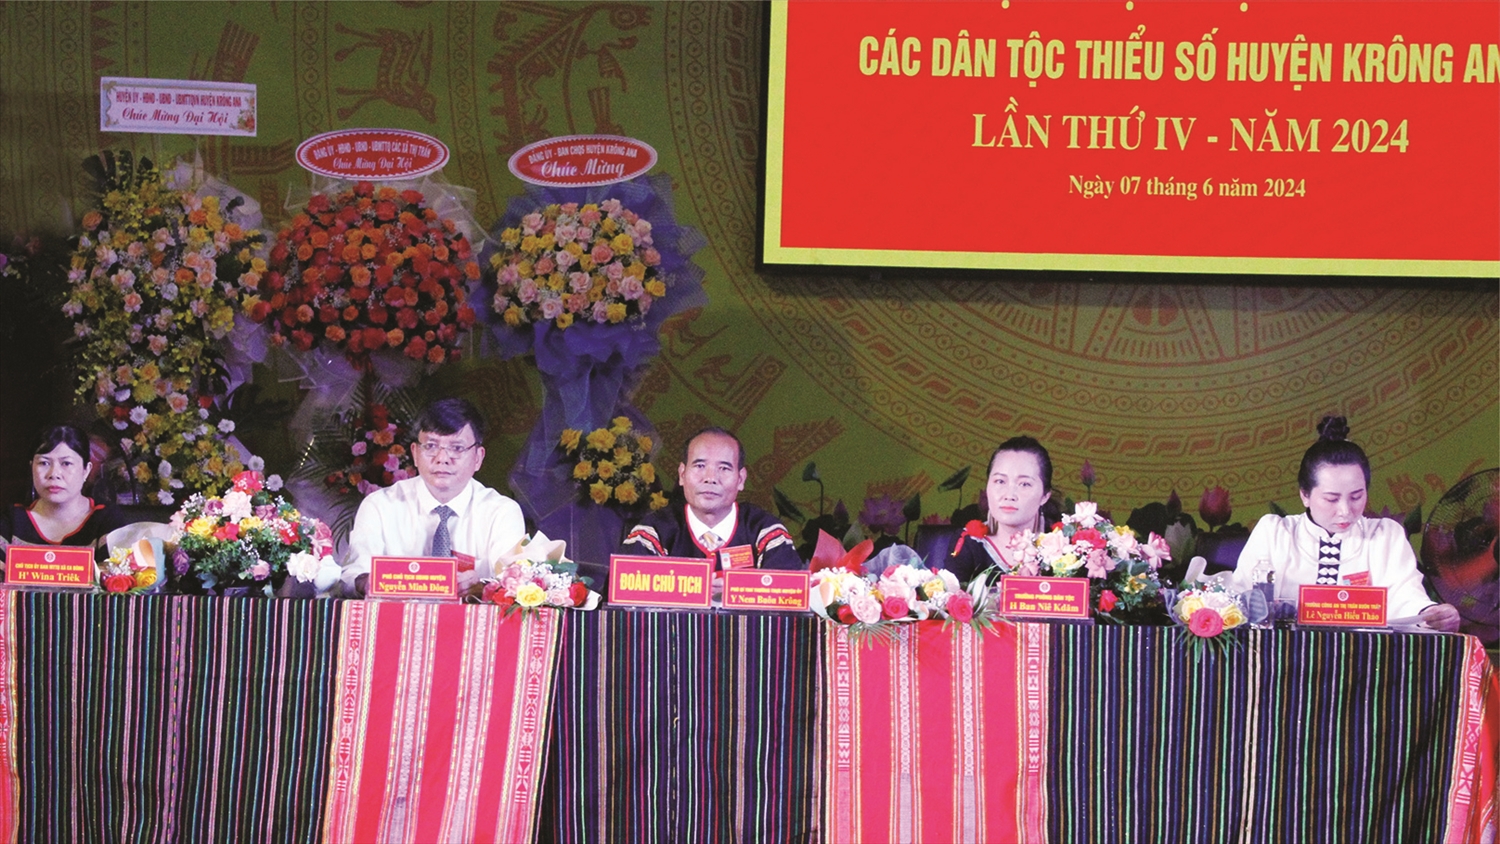 Đoàn Chủ tịch điều hành Đại hội Đại biểu các DTTS huyện Krông Ana lần thứ IV, năm 2024